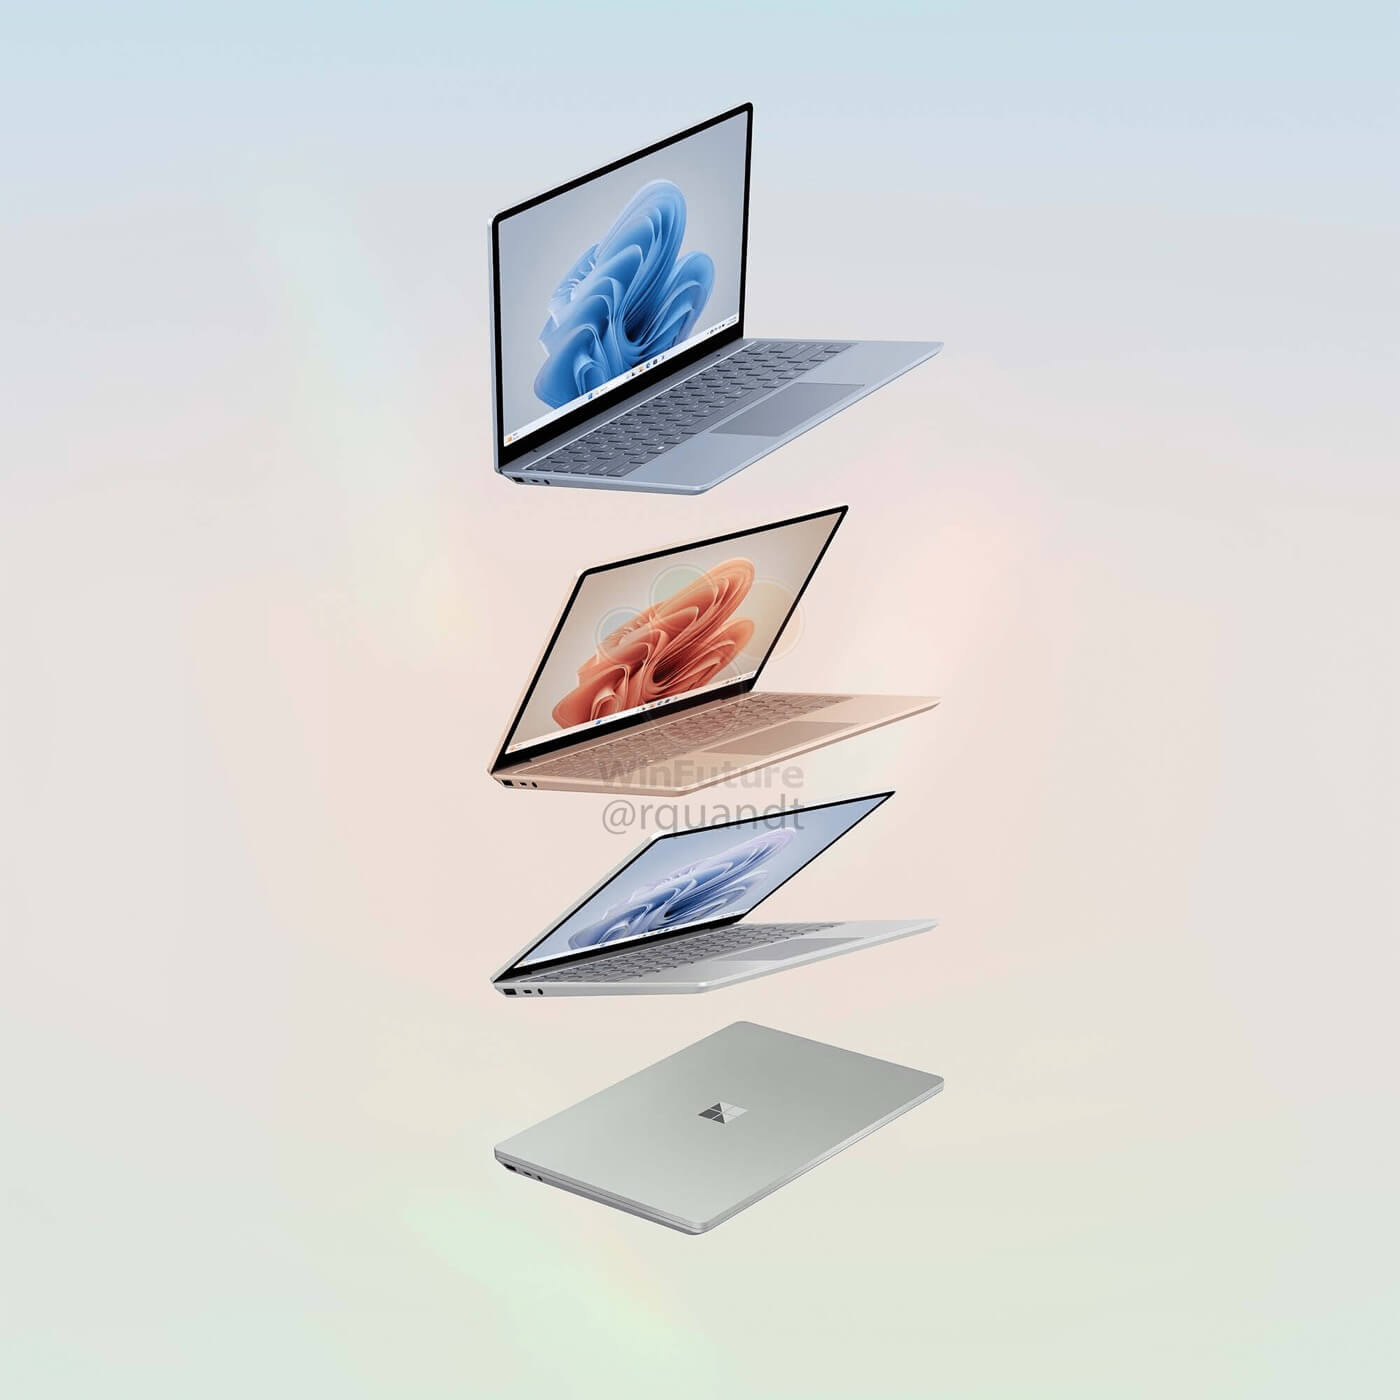 ｢Surface Laptop Go 3｣の製品画像が流出 ｰ 大きな変更はなく、内部仕様のみのアップグレードに